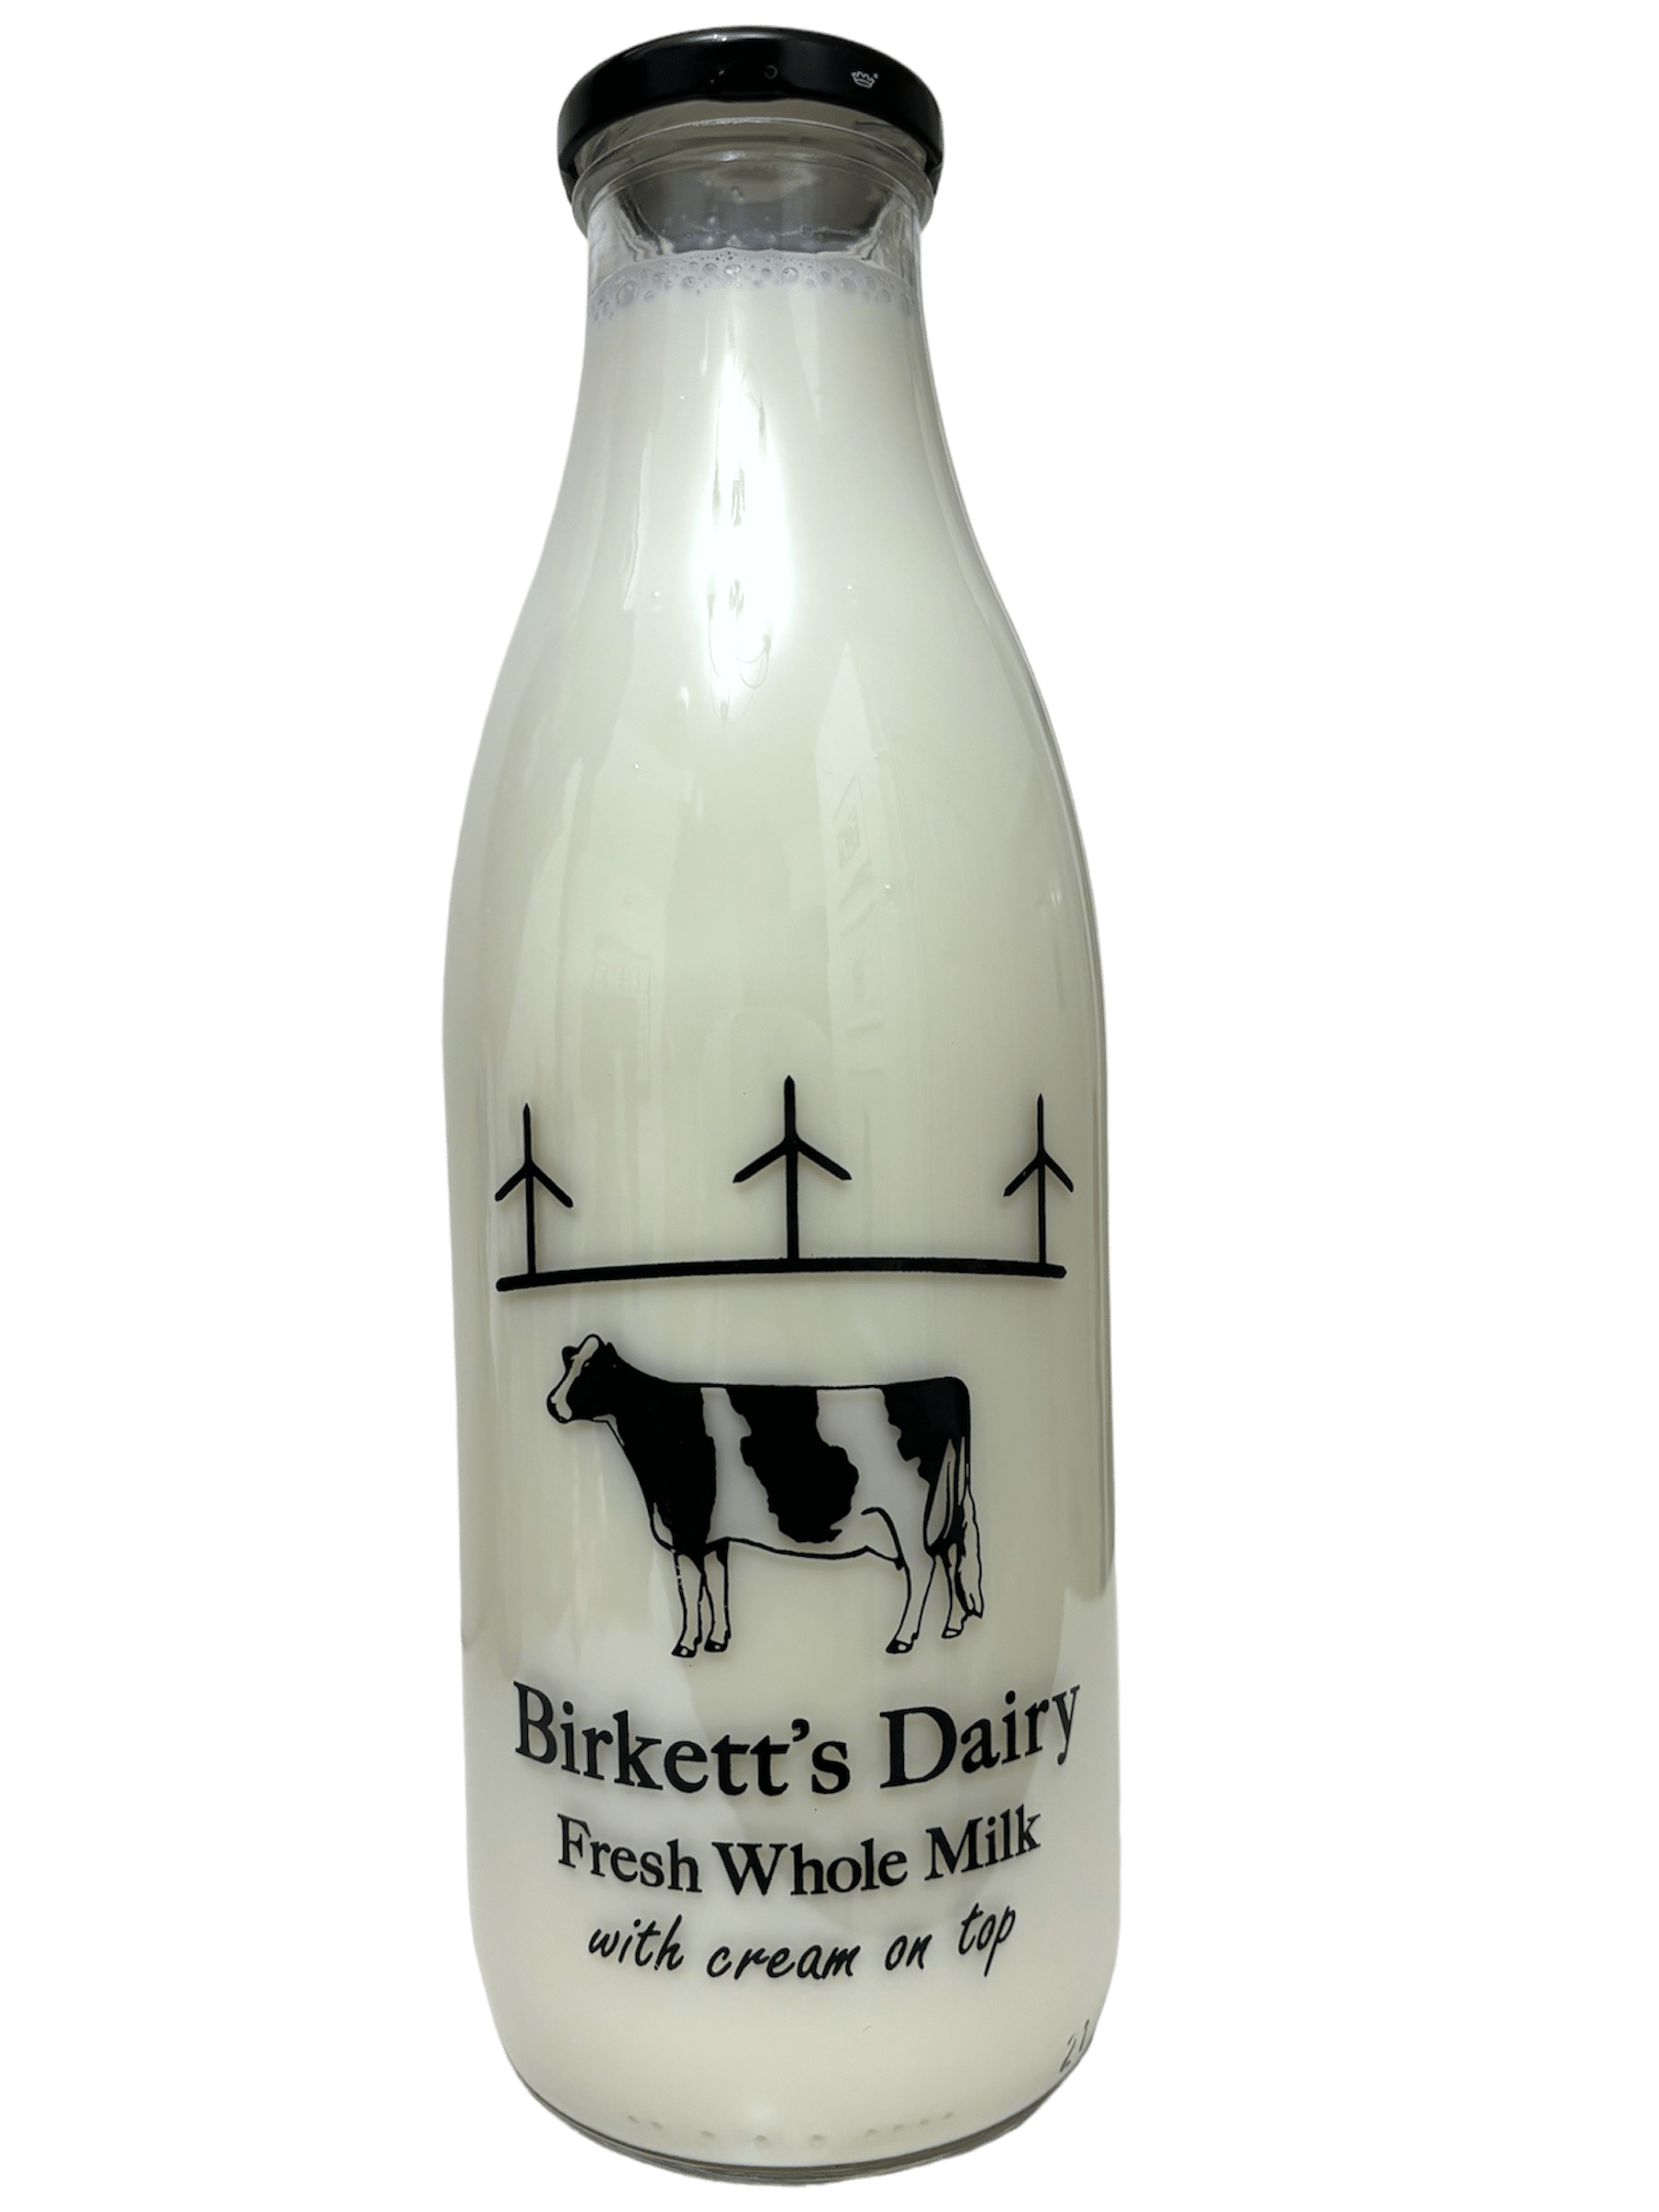 Birketts Dairy - www.Kelis.info #KelisTheBottleBank